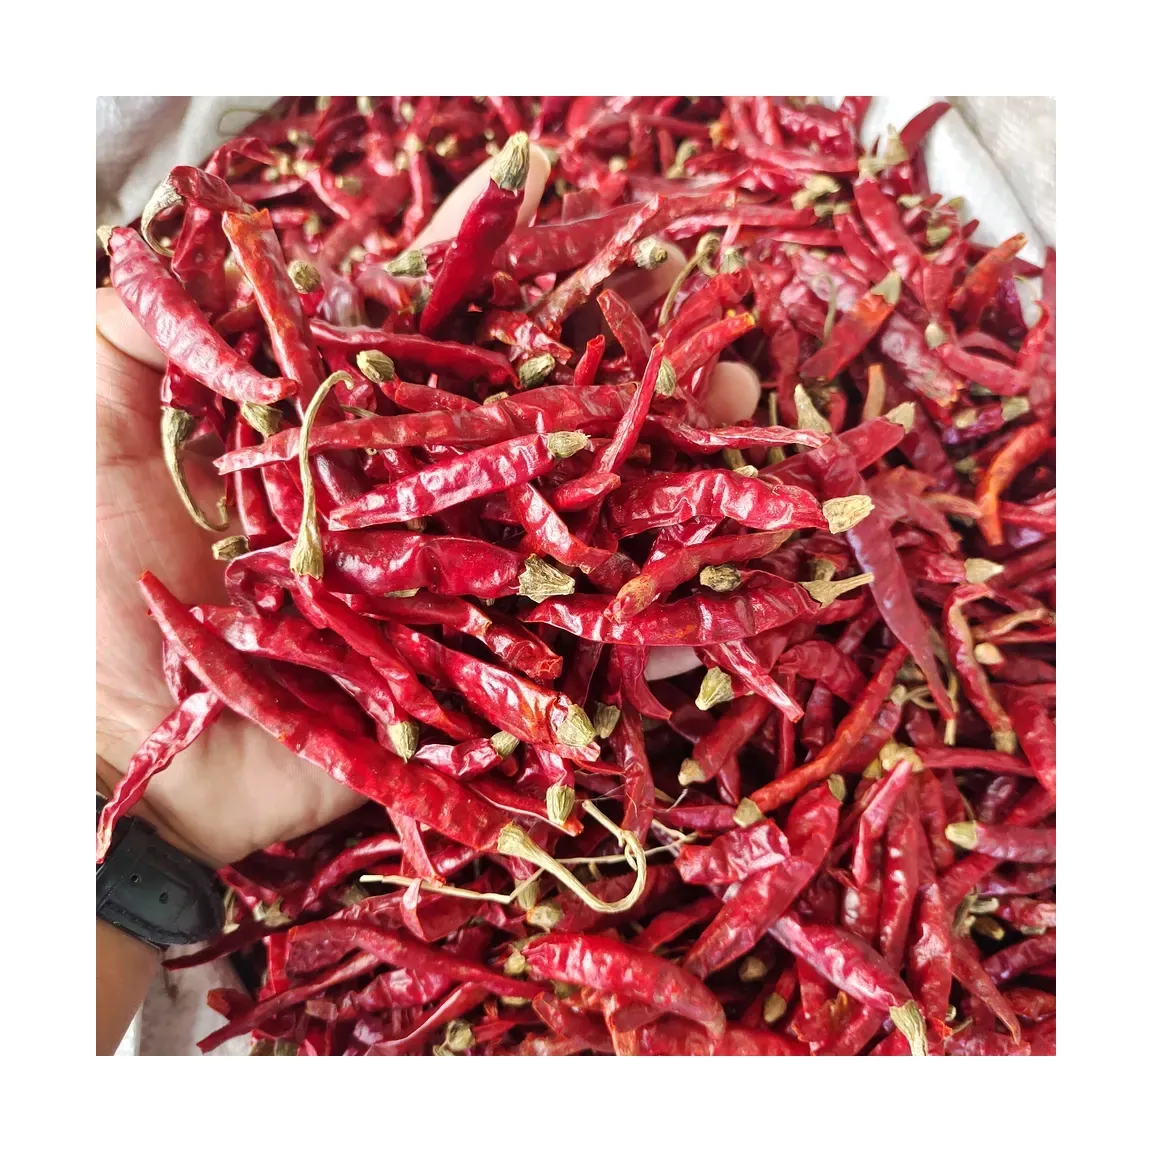 De Chinese Fabriek Zout En Peper Molen Set Chili Voor Het Koken Van Gedroogde Rode Peper Voor Sichuan Voedsel Kruiden